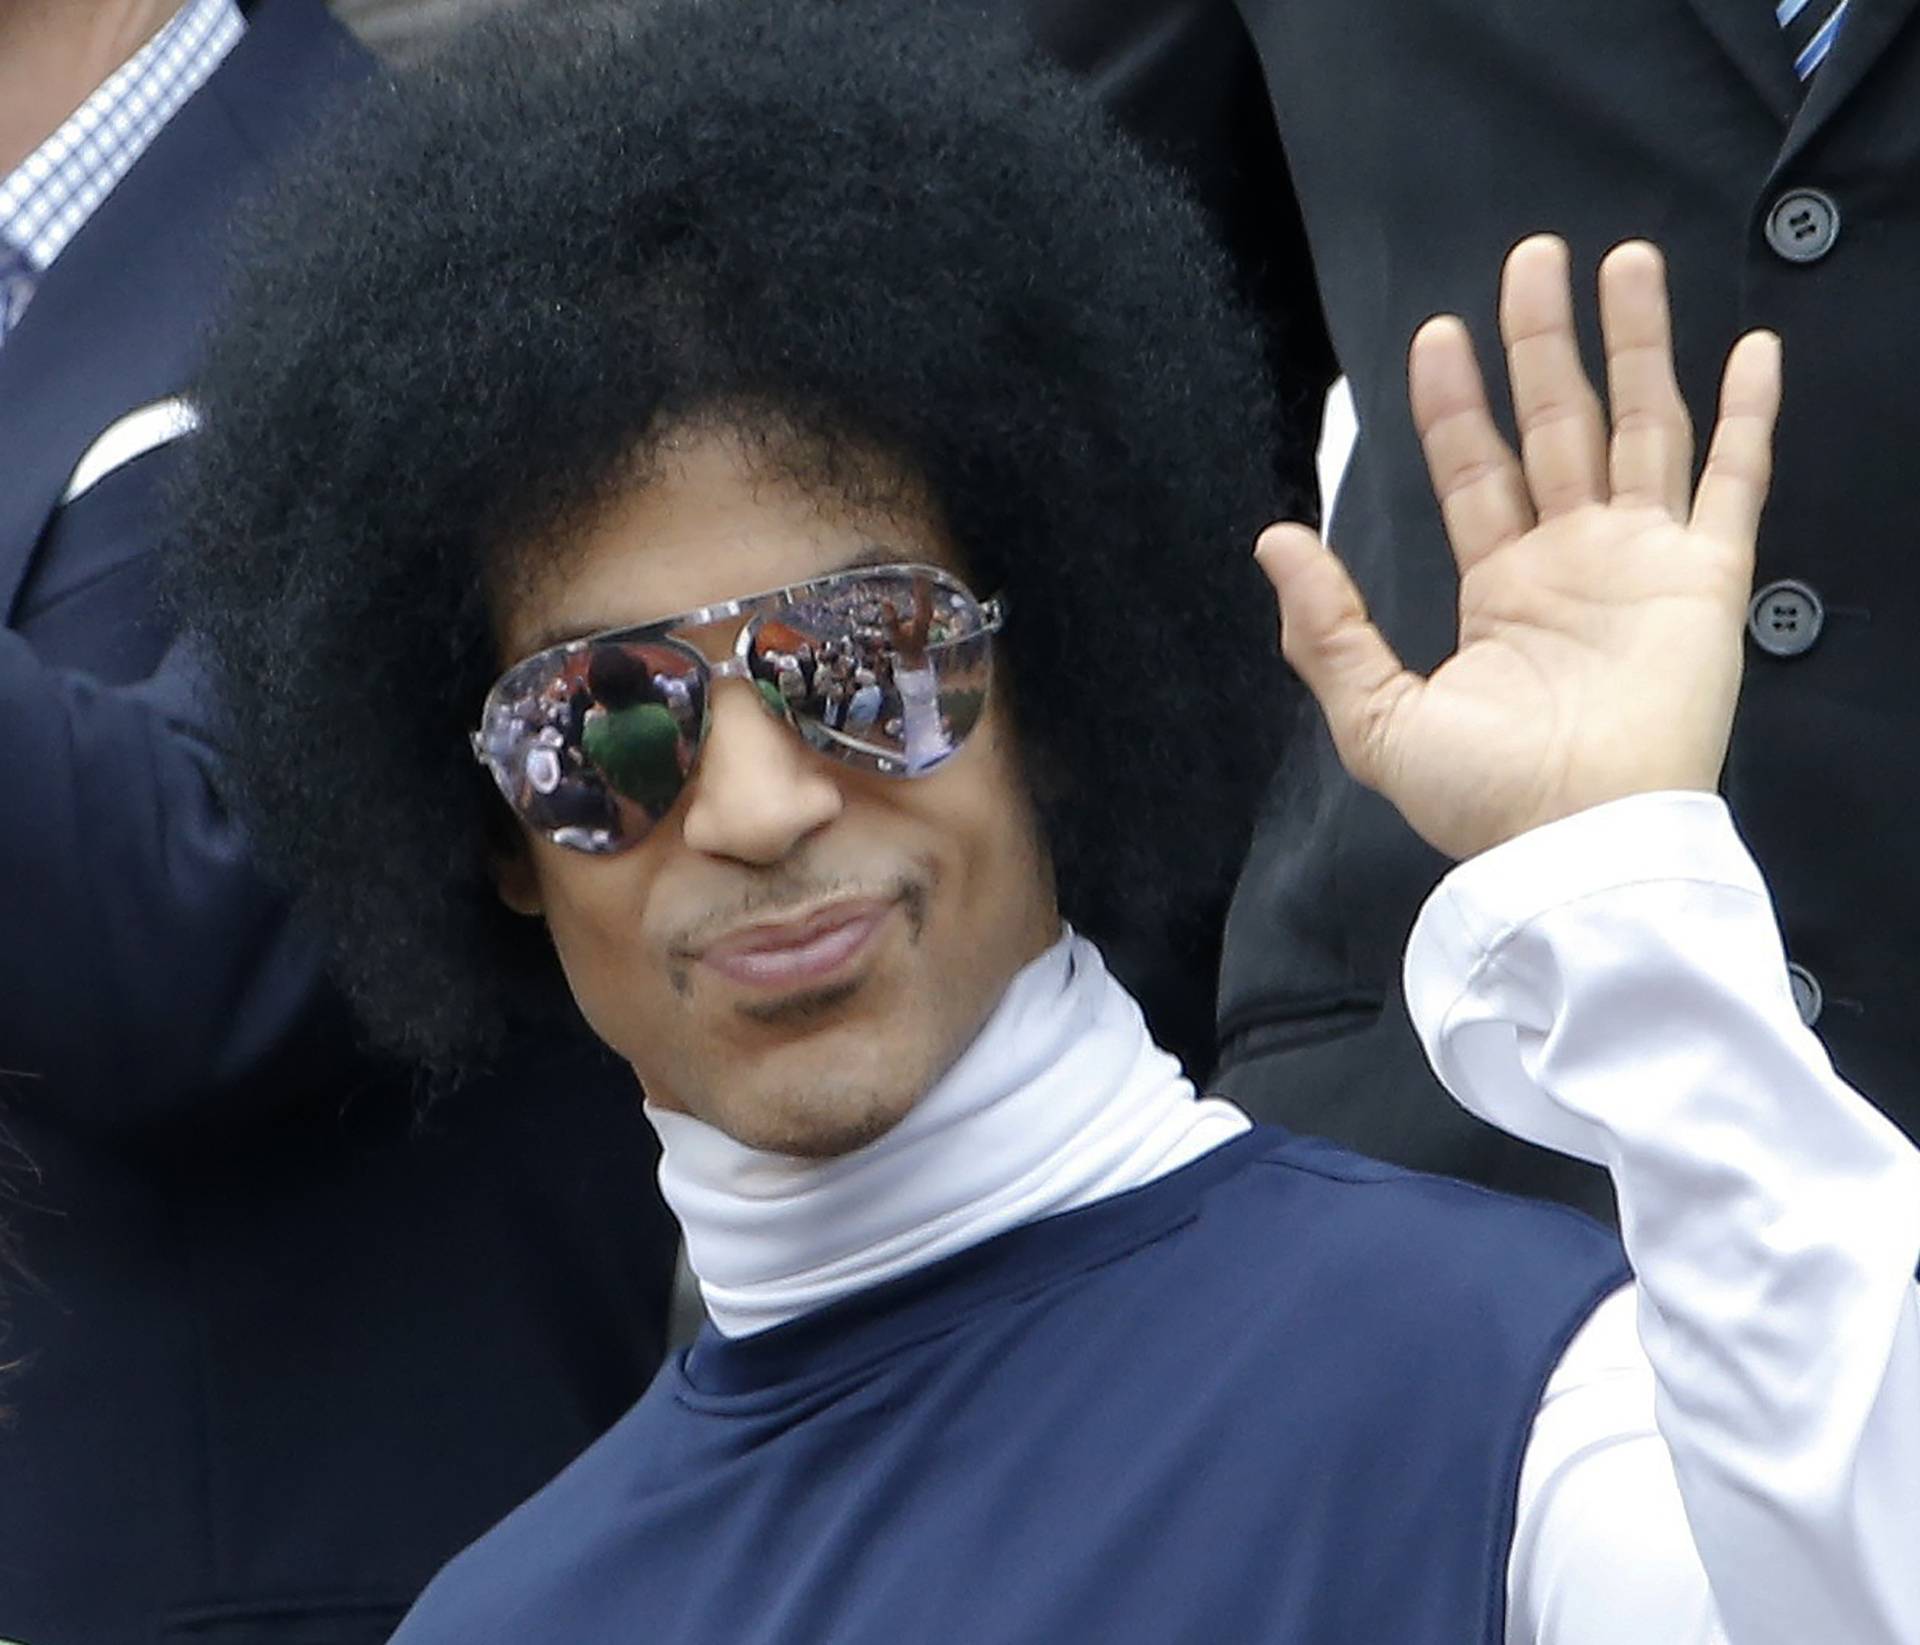 Prince umro u 58. godini, svoj zadnji koncert održao u subotu